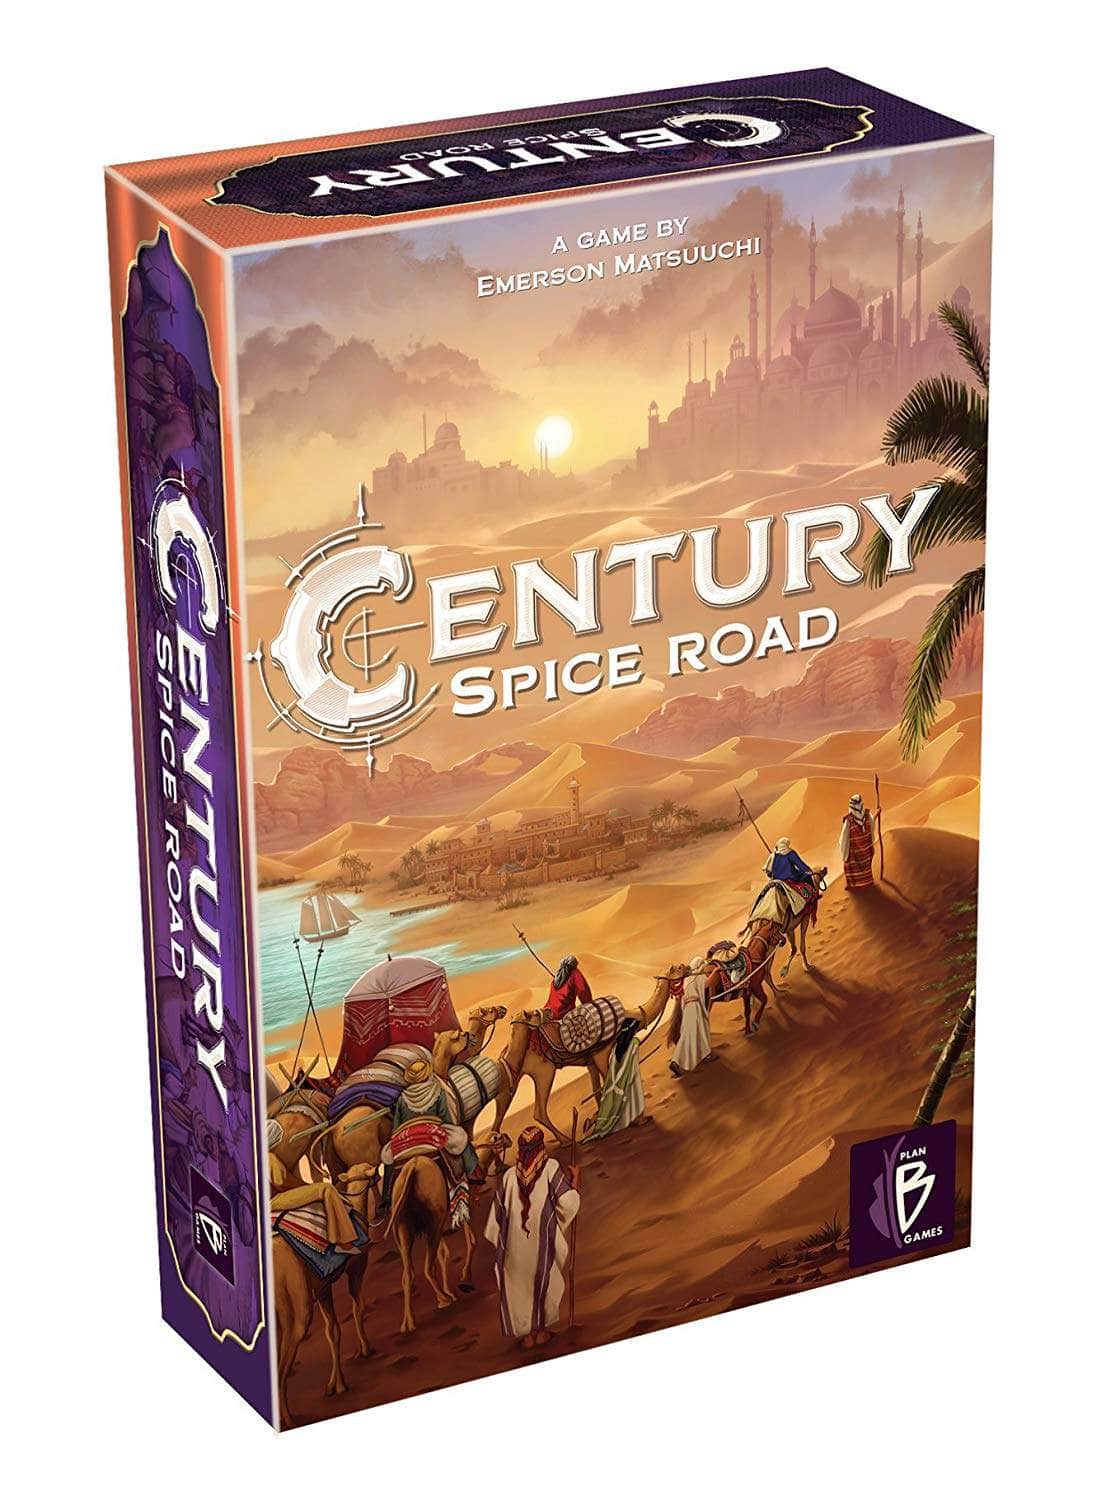 Century: juego de mesa minorista de Spice Road (edición minorista) Plan B Games KS800523A